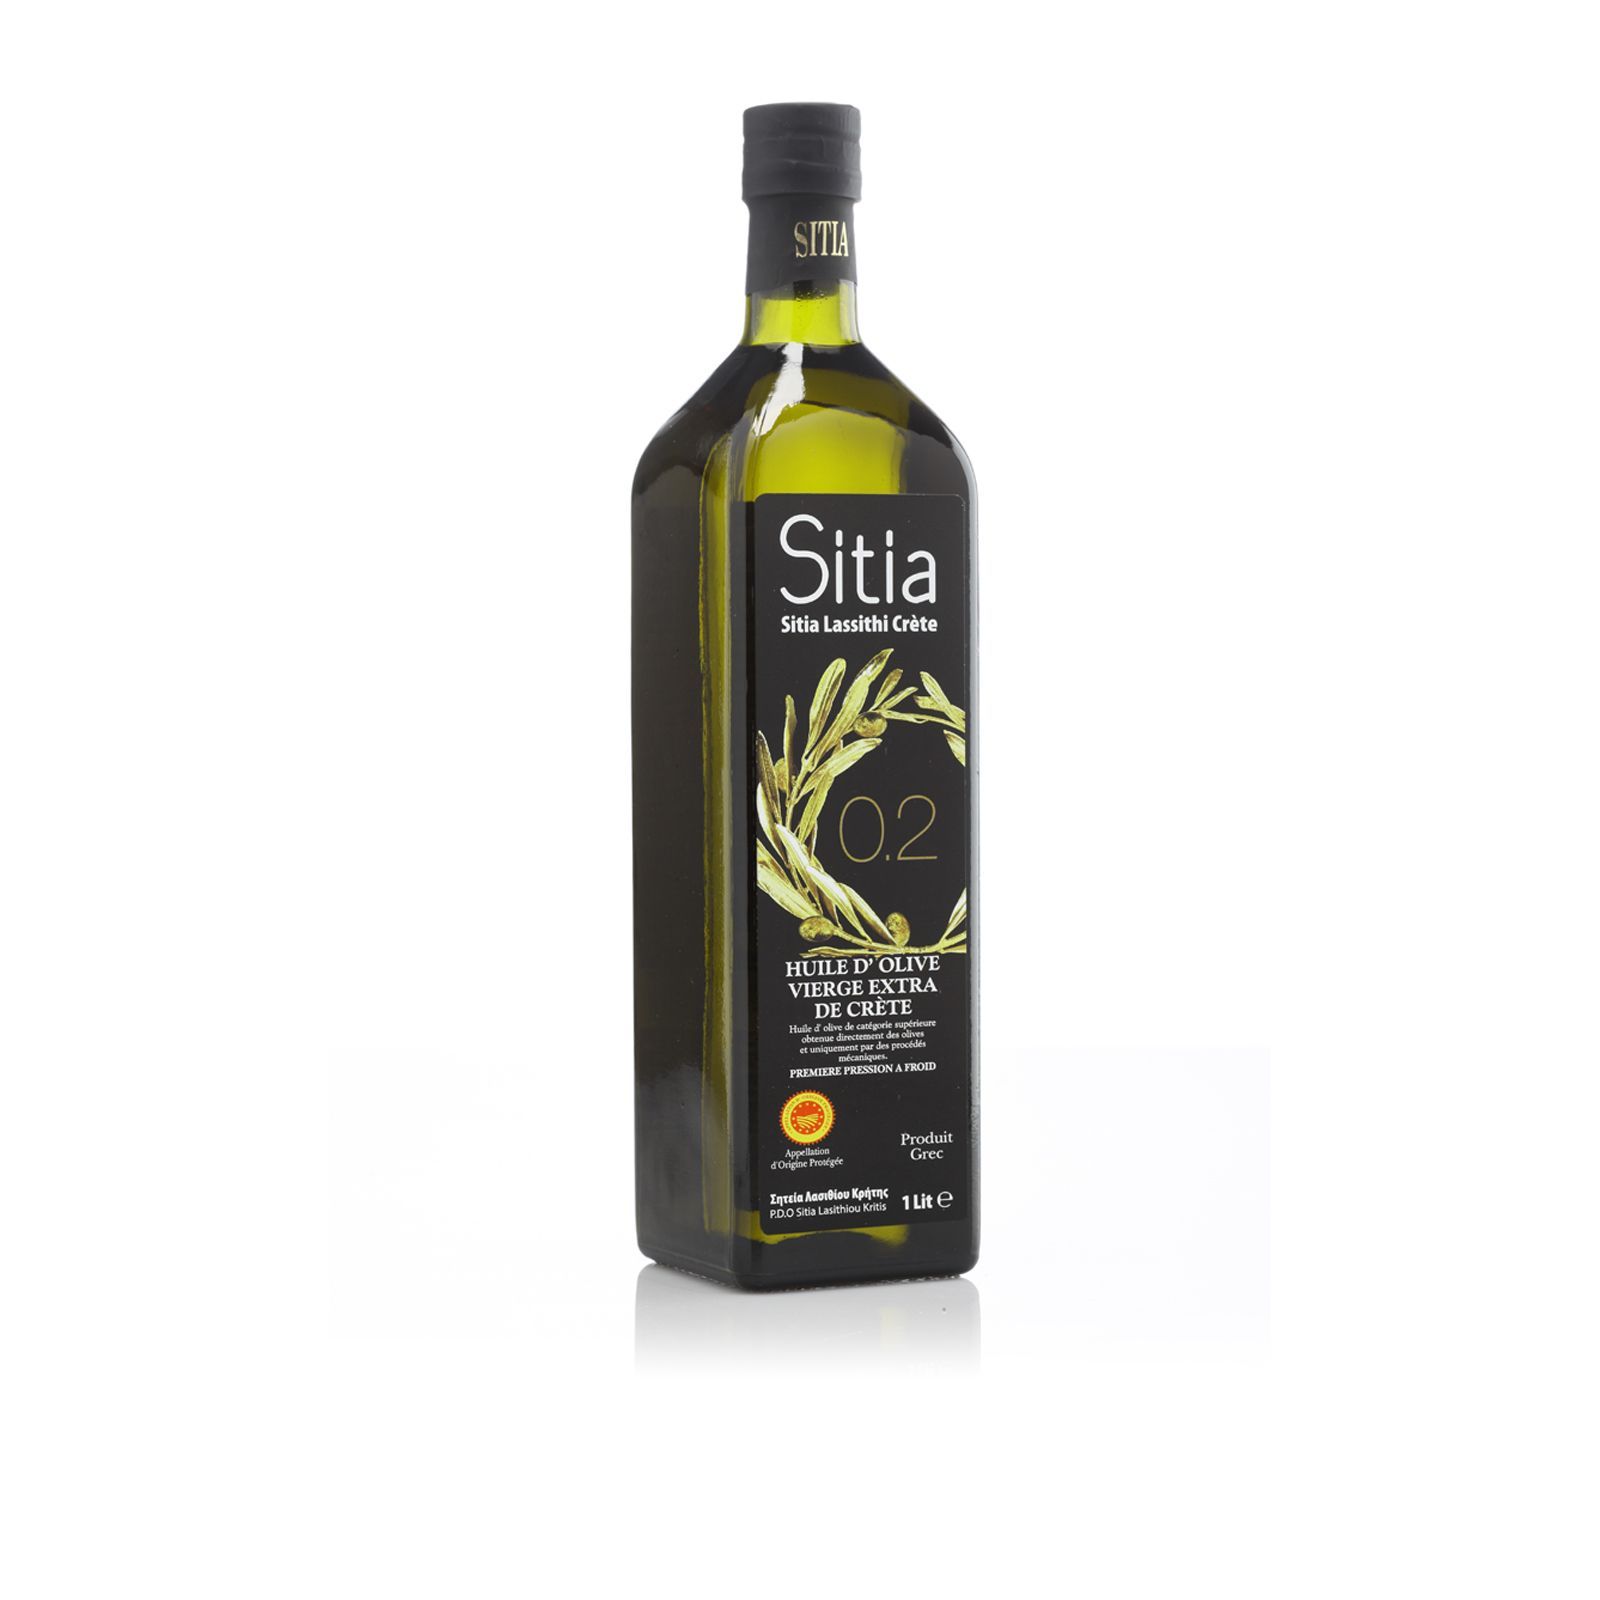 Метро оливковое масло. Оливковое масло p.d.o. Sitia 02 Extra Virgin, 1л. Оливковое масло Extra Virgin 0,2% Sitia p.d.o. 0,5л. Sitia масло оливковое Extra Virgin 0,1-0,2%. Масло оливковое Sitia Extra Virgin 5л.